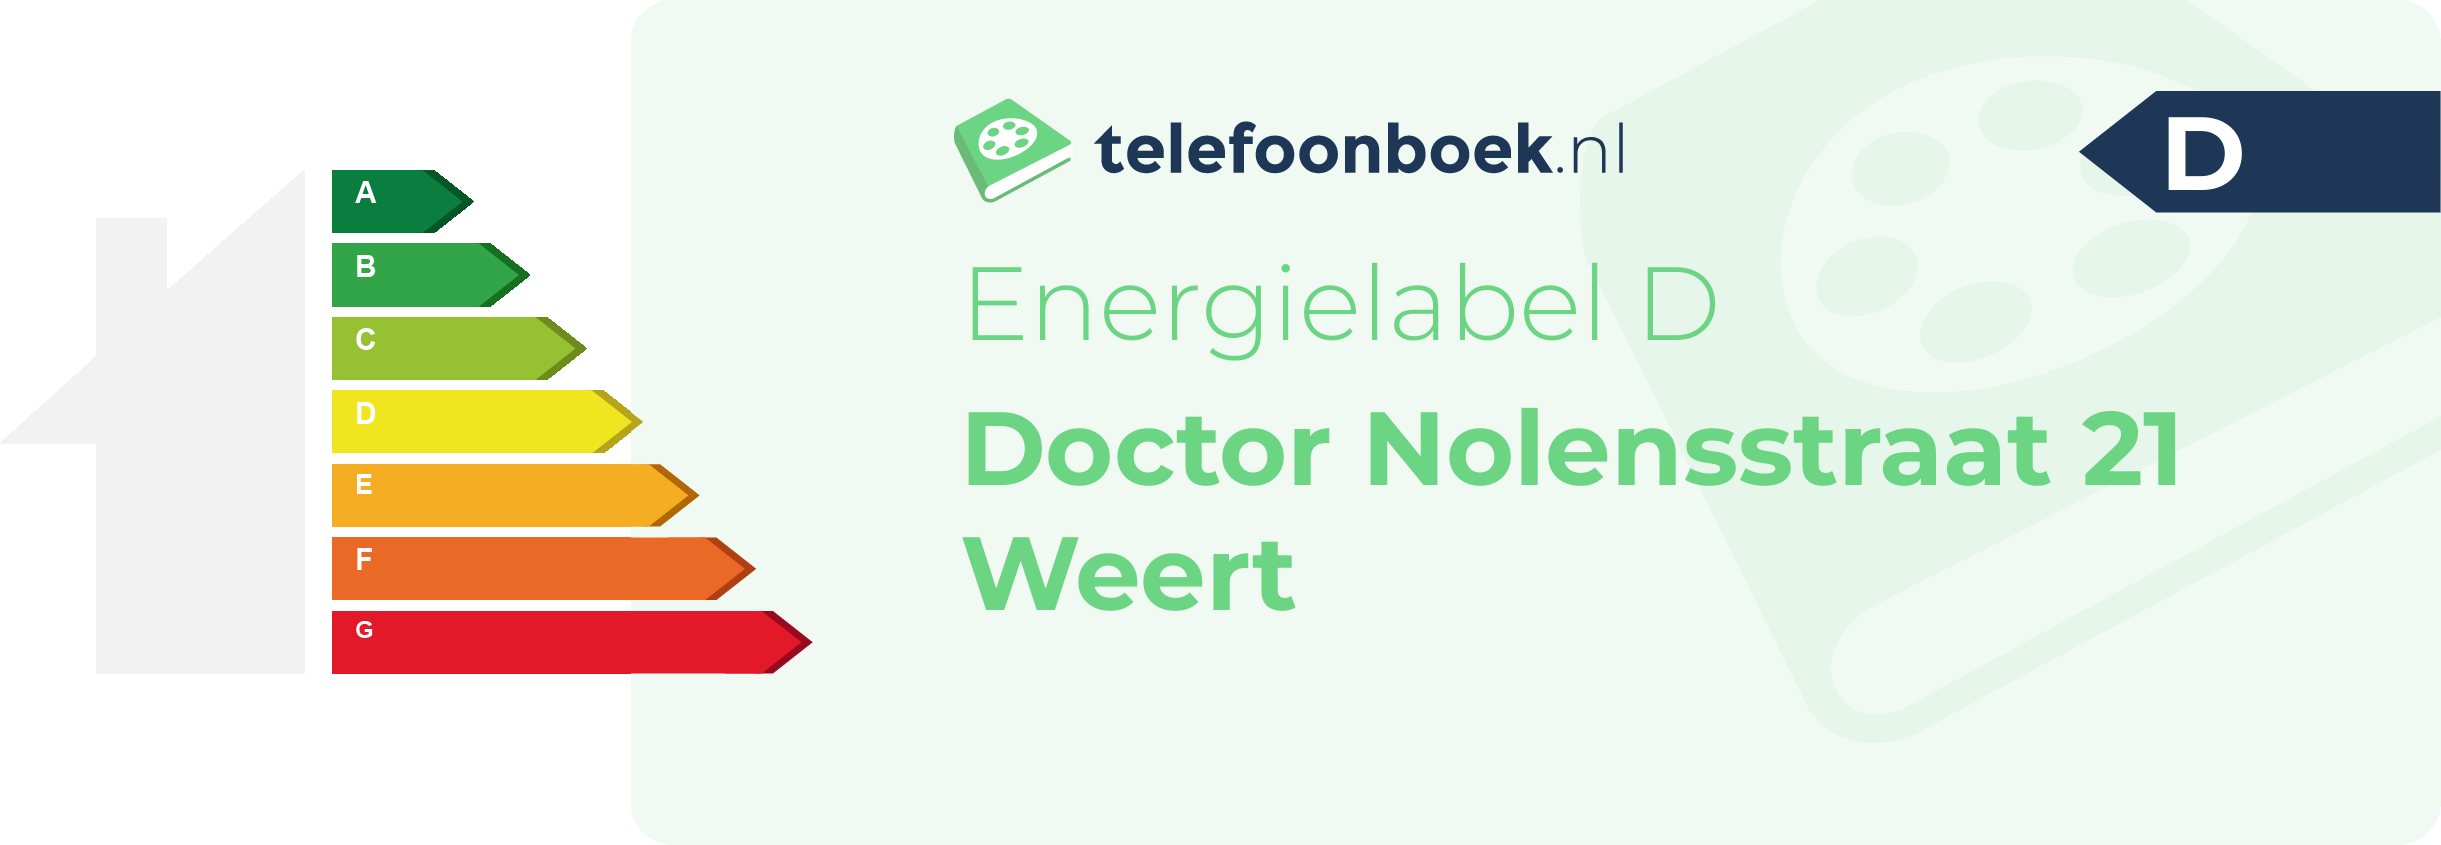 Energielabel Doctor Nolensstraat 21 Weert